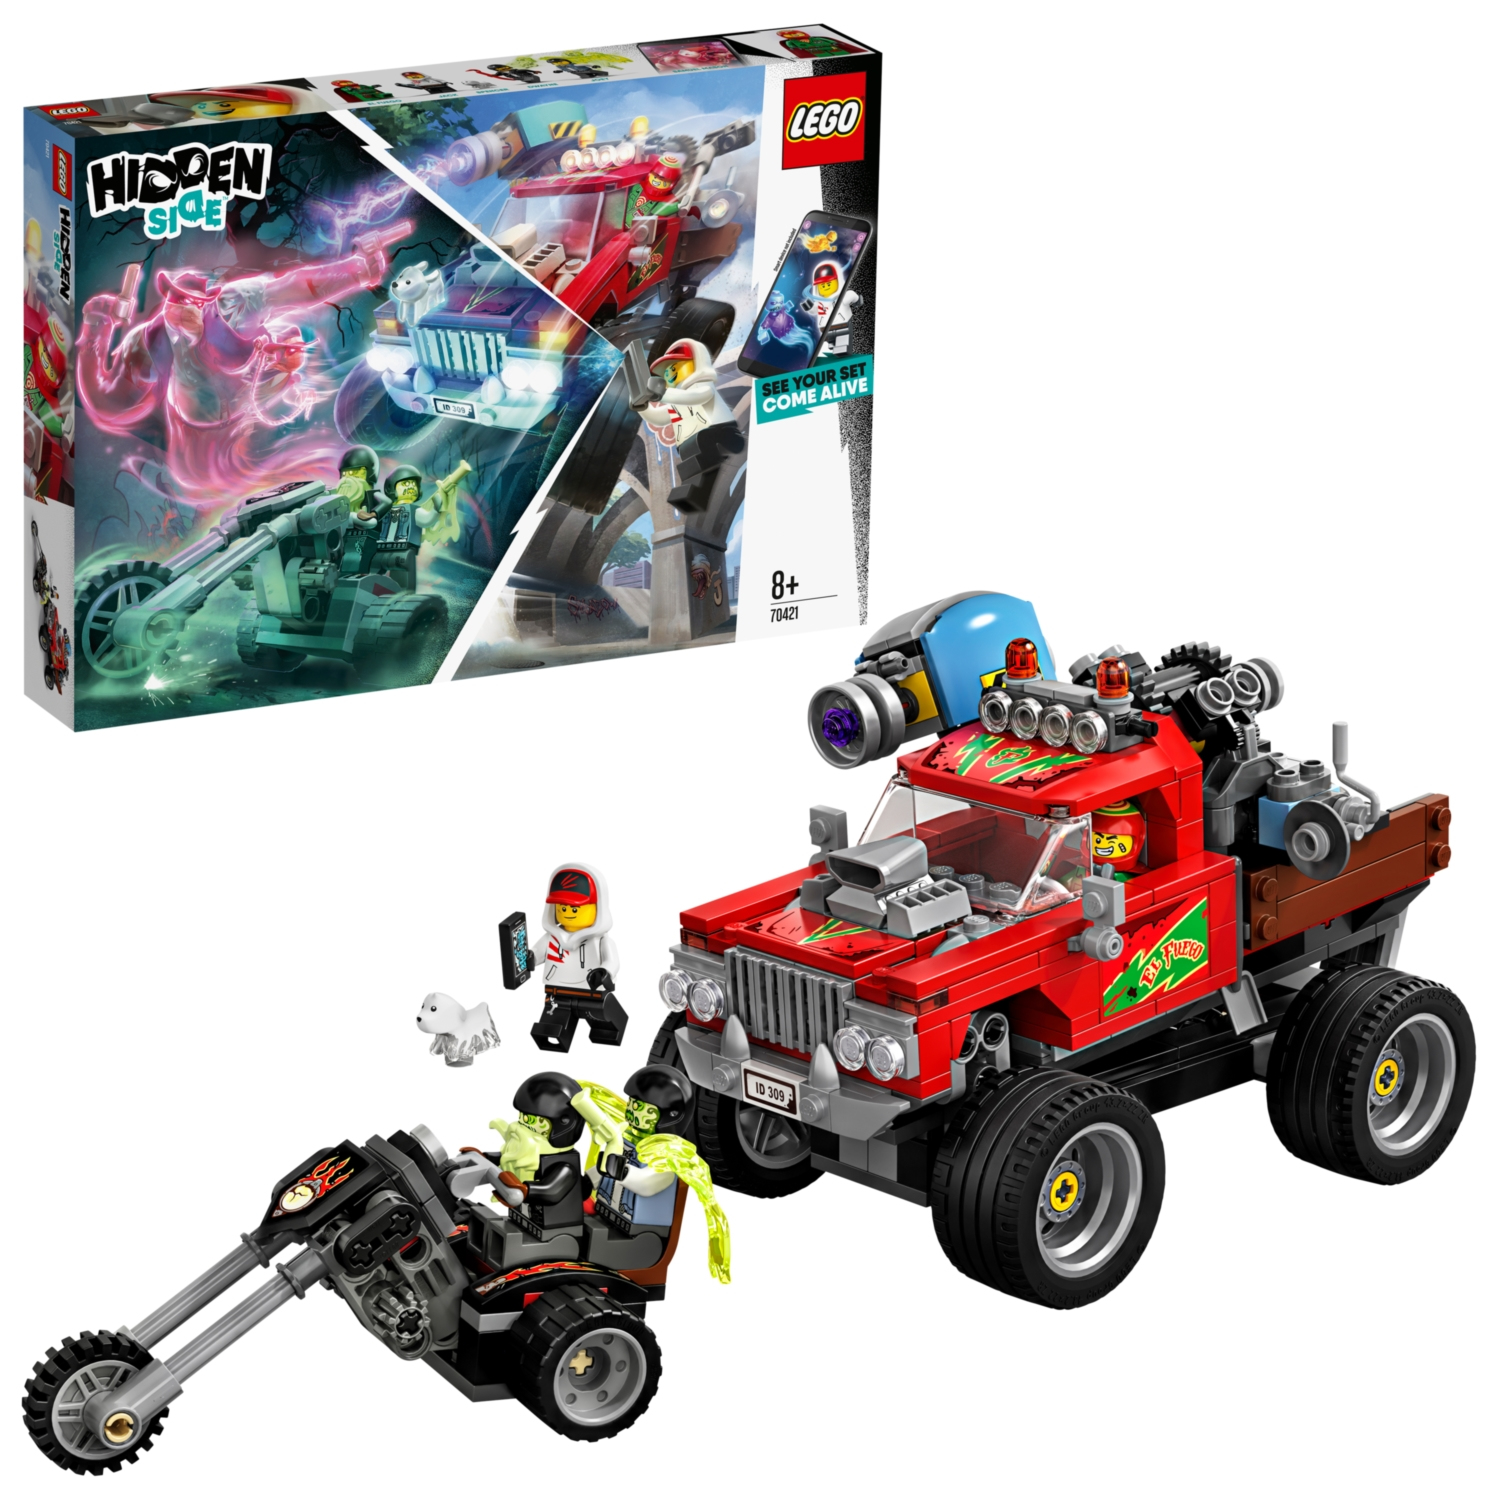 LEGO Hidden Side El Fuegos Stunt-Truck - 70421